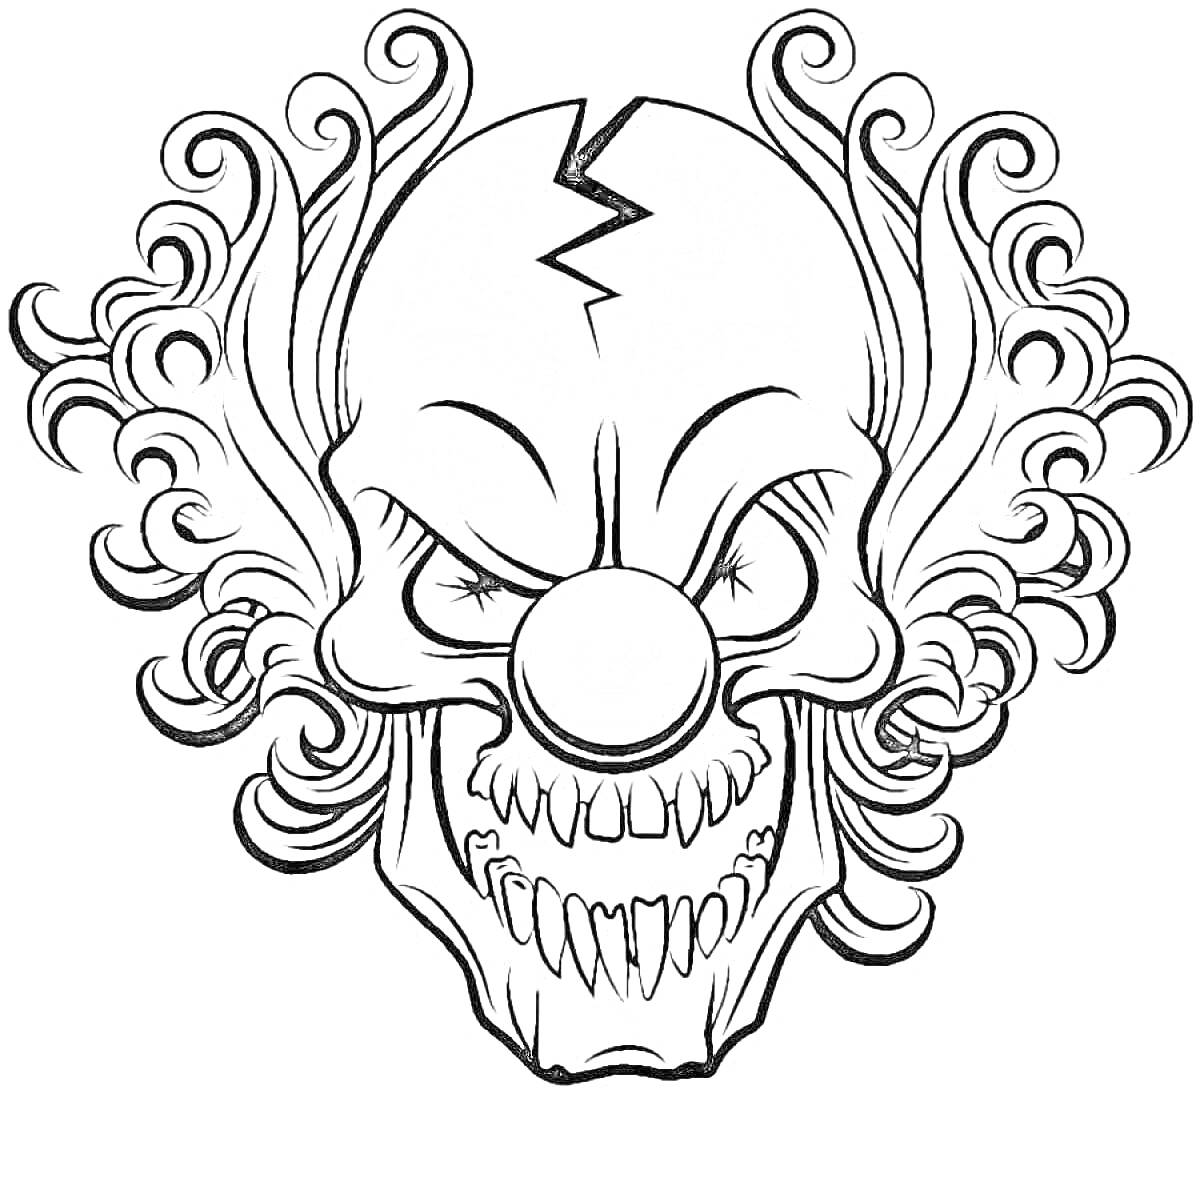 Лицо злобного клоуна с курчавыми волосами, красным носом и оскаленными зубами